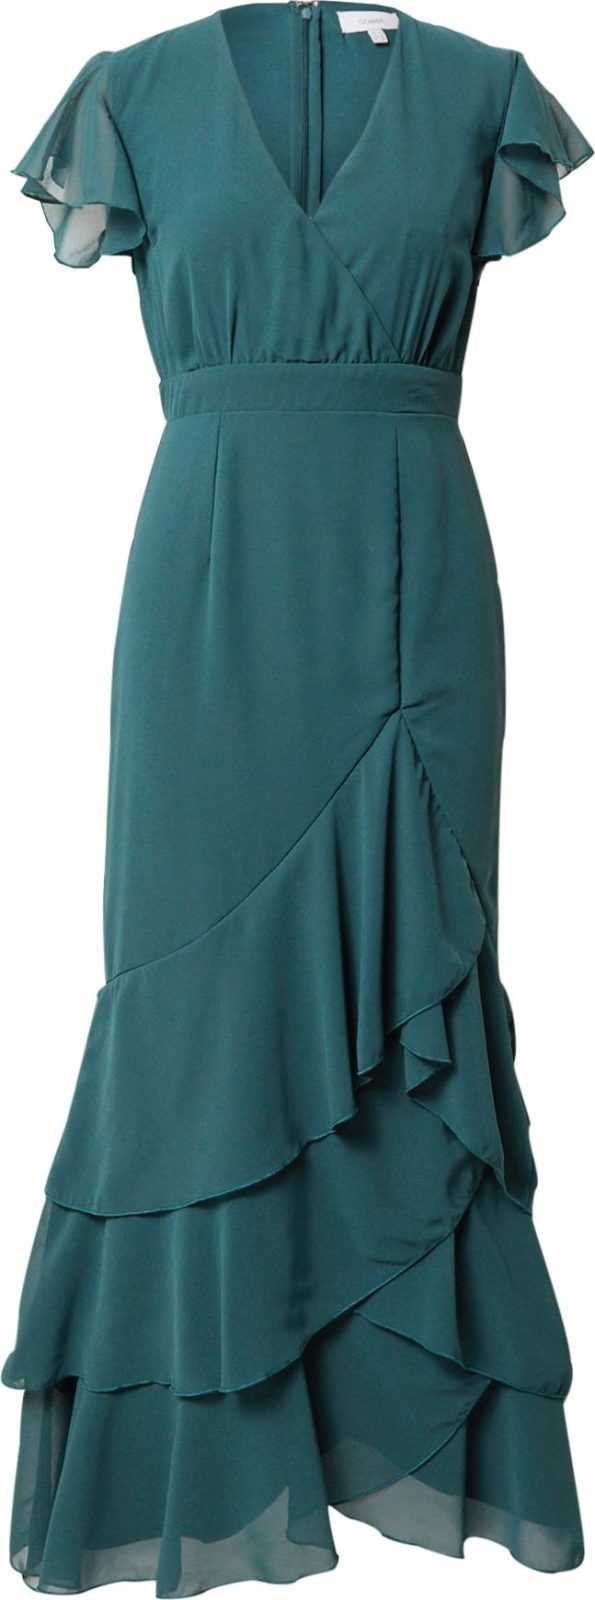 Coast Společenské šaty smaragdová